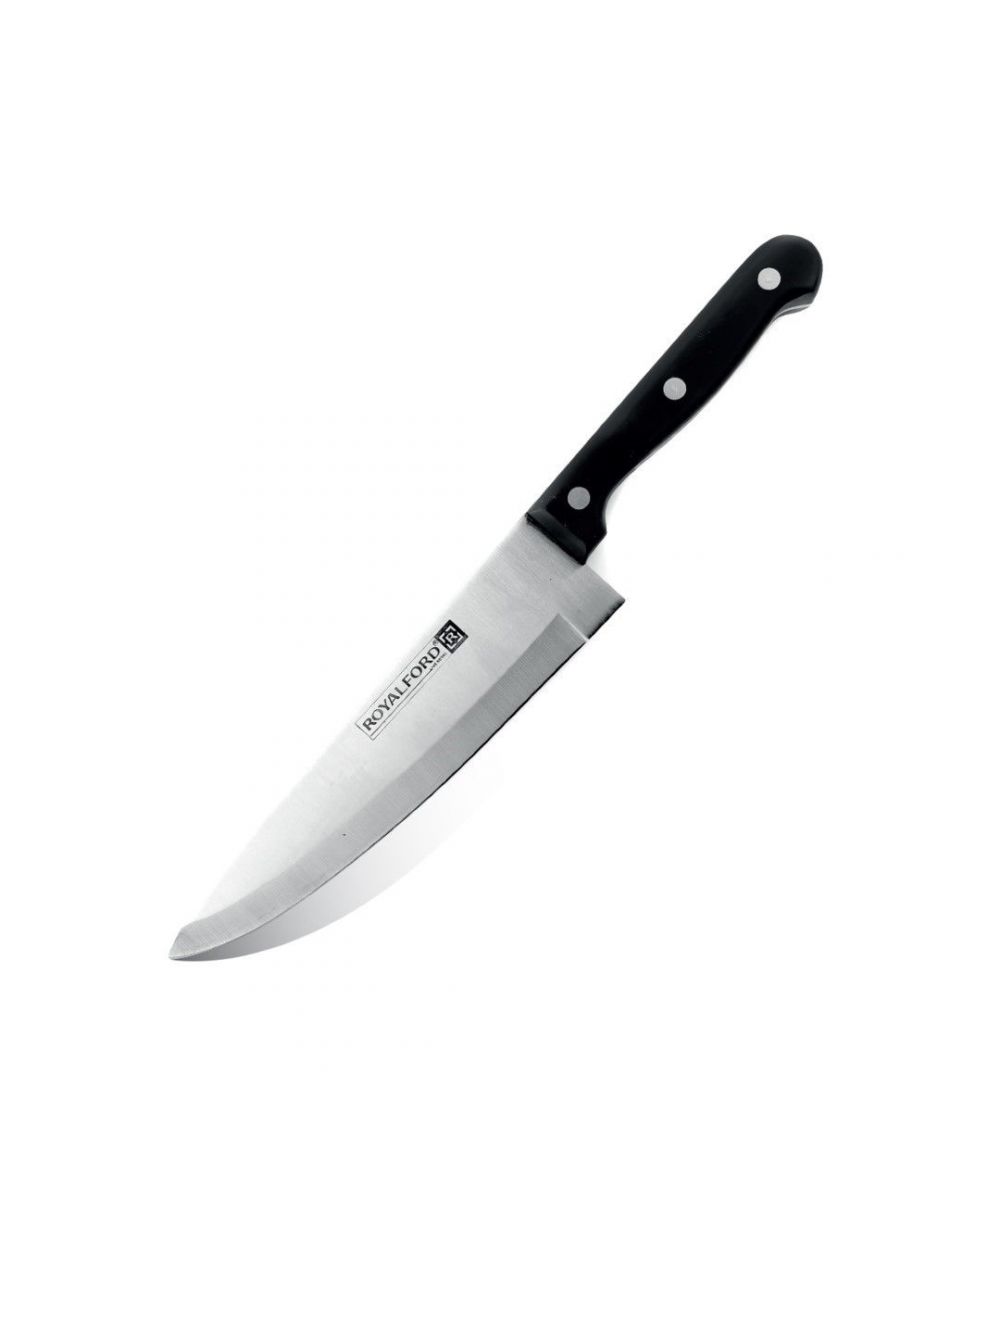 Royalford RF7828 Utility Knife